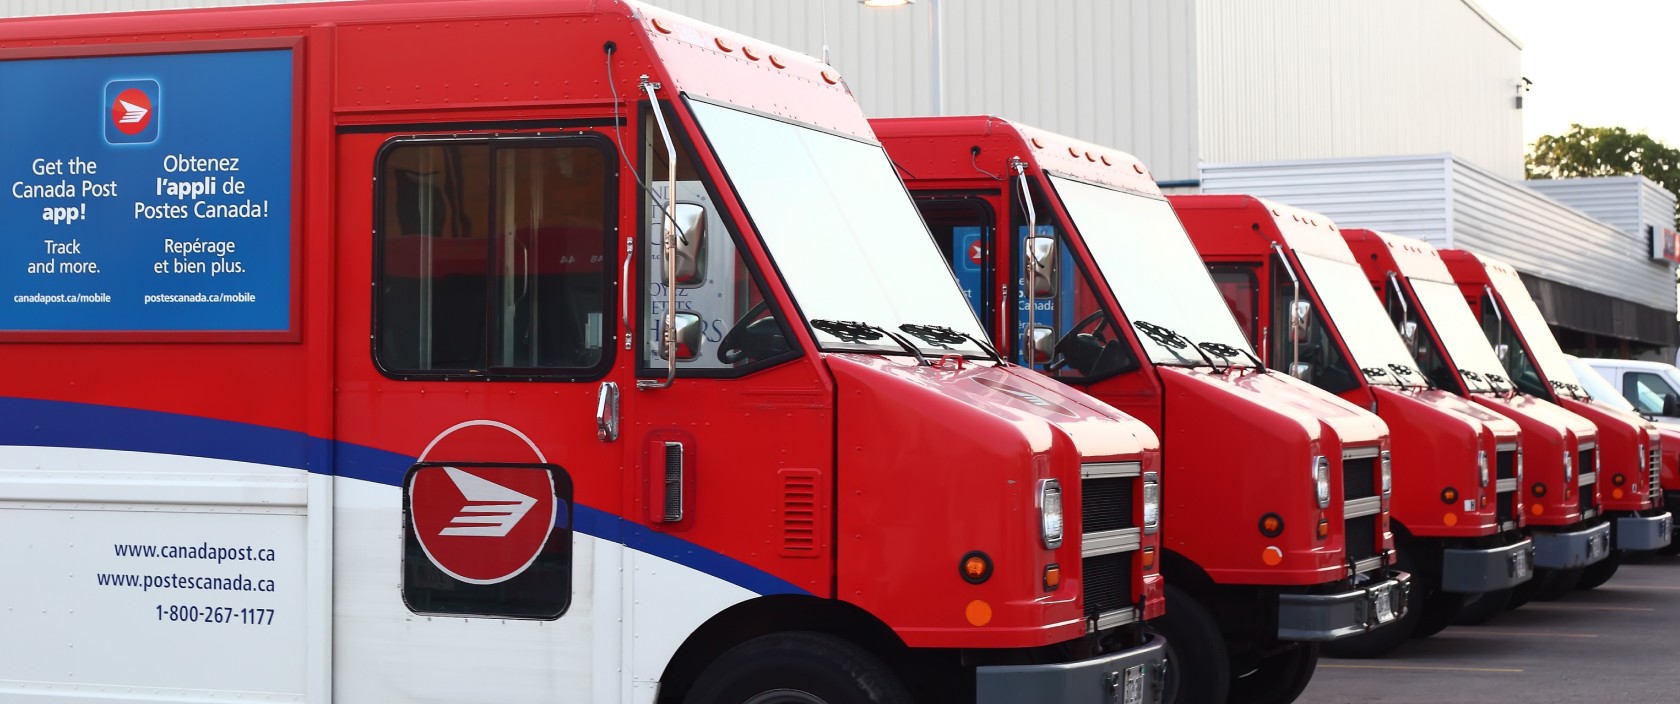 Camions de livraison de Postes Canada stationnés en rangée